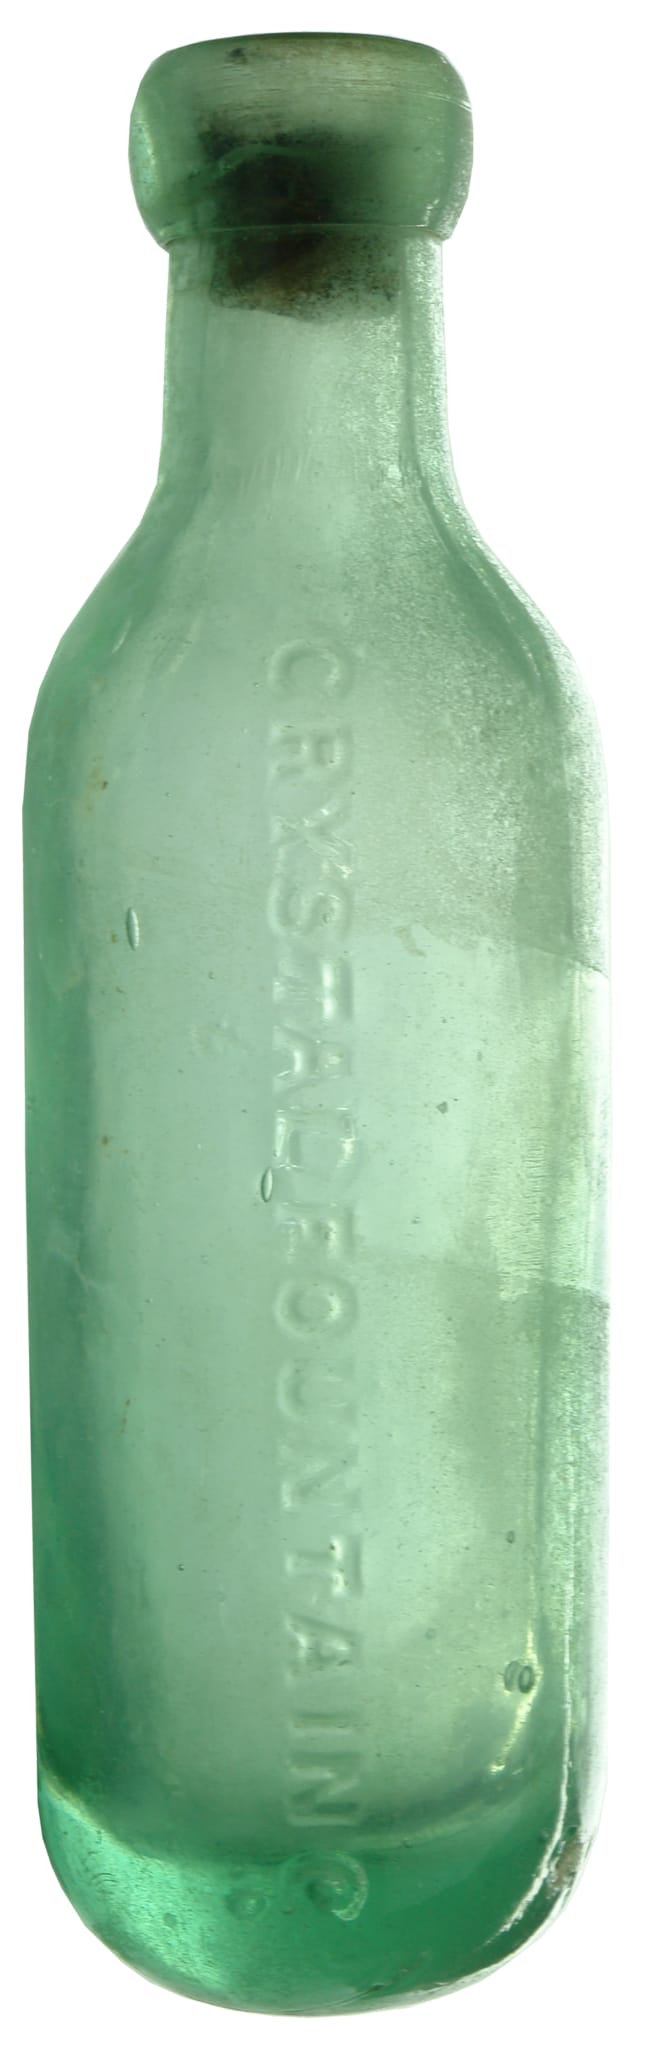 Crystal Fountain Sydney Maugham Bottle